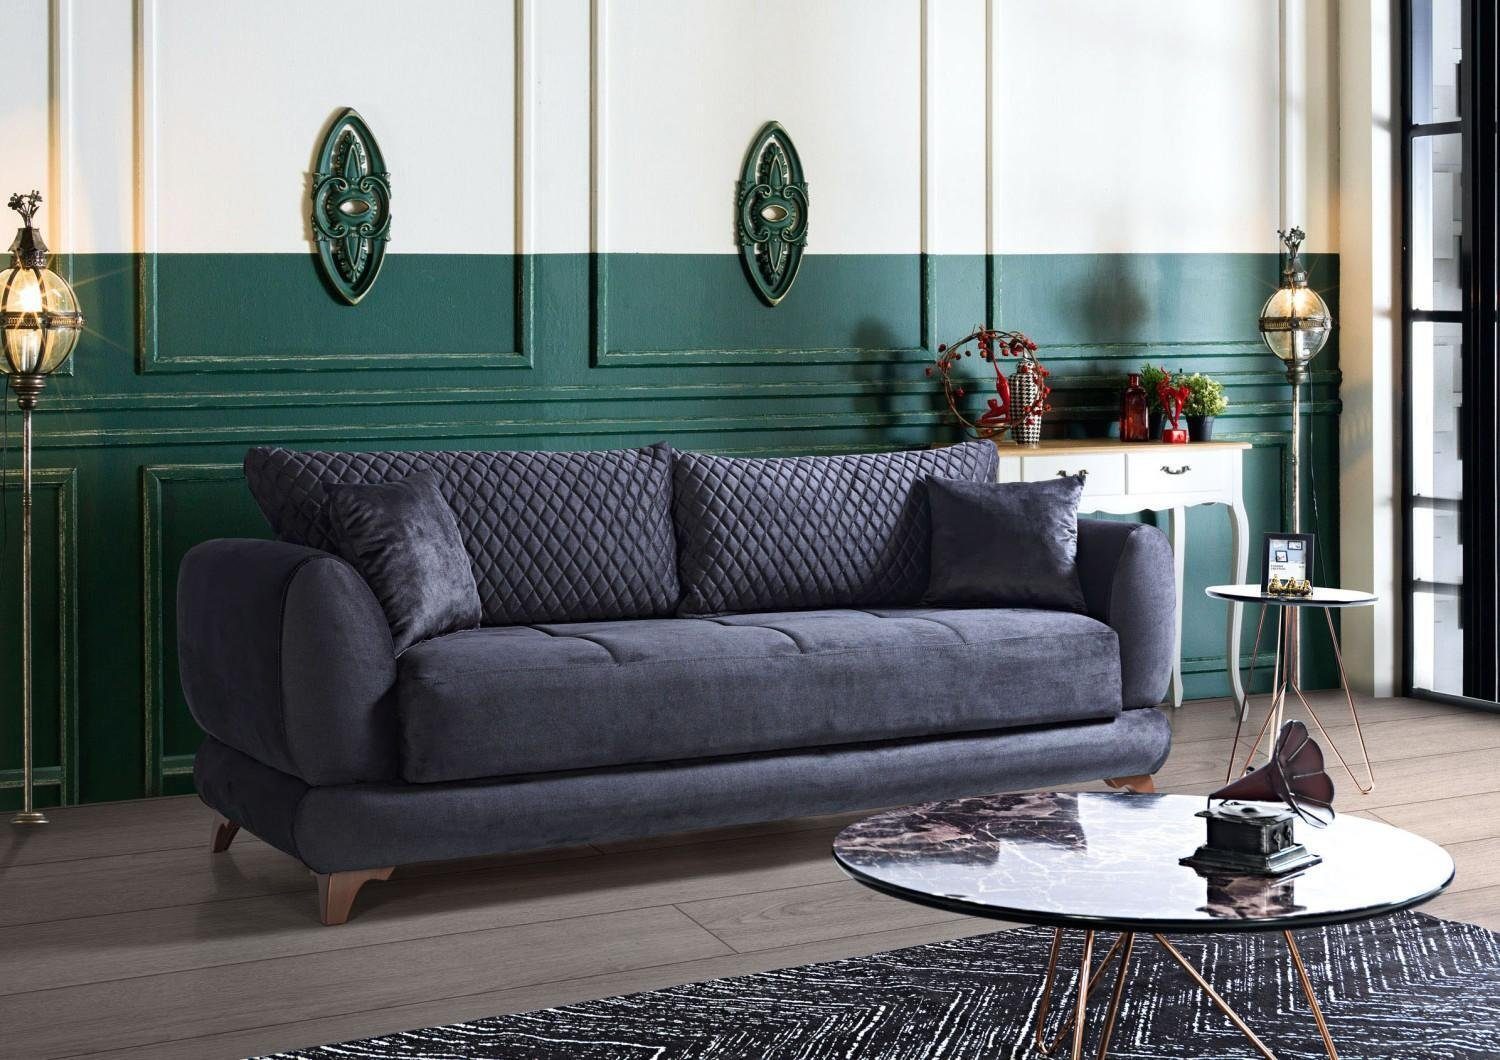 JVmoebel Sofa Dreisitzer Couch mit Schlaffunktion Sofa Bett Klappcouch  Textil Sofas, Made In Europe